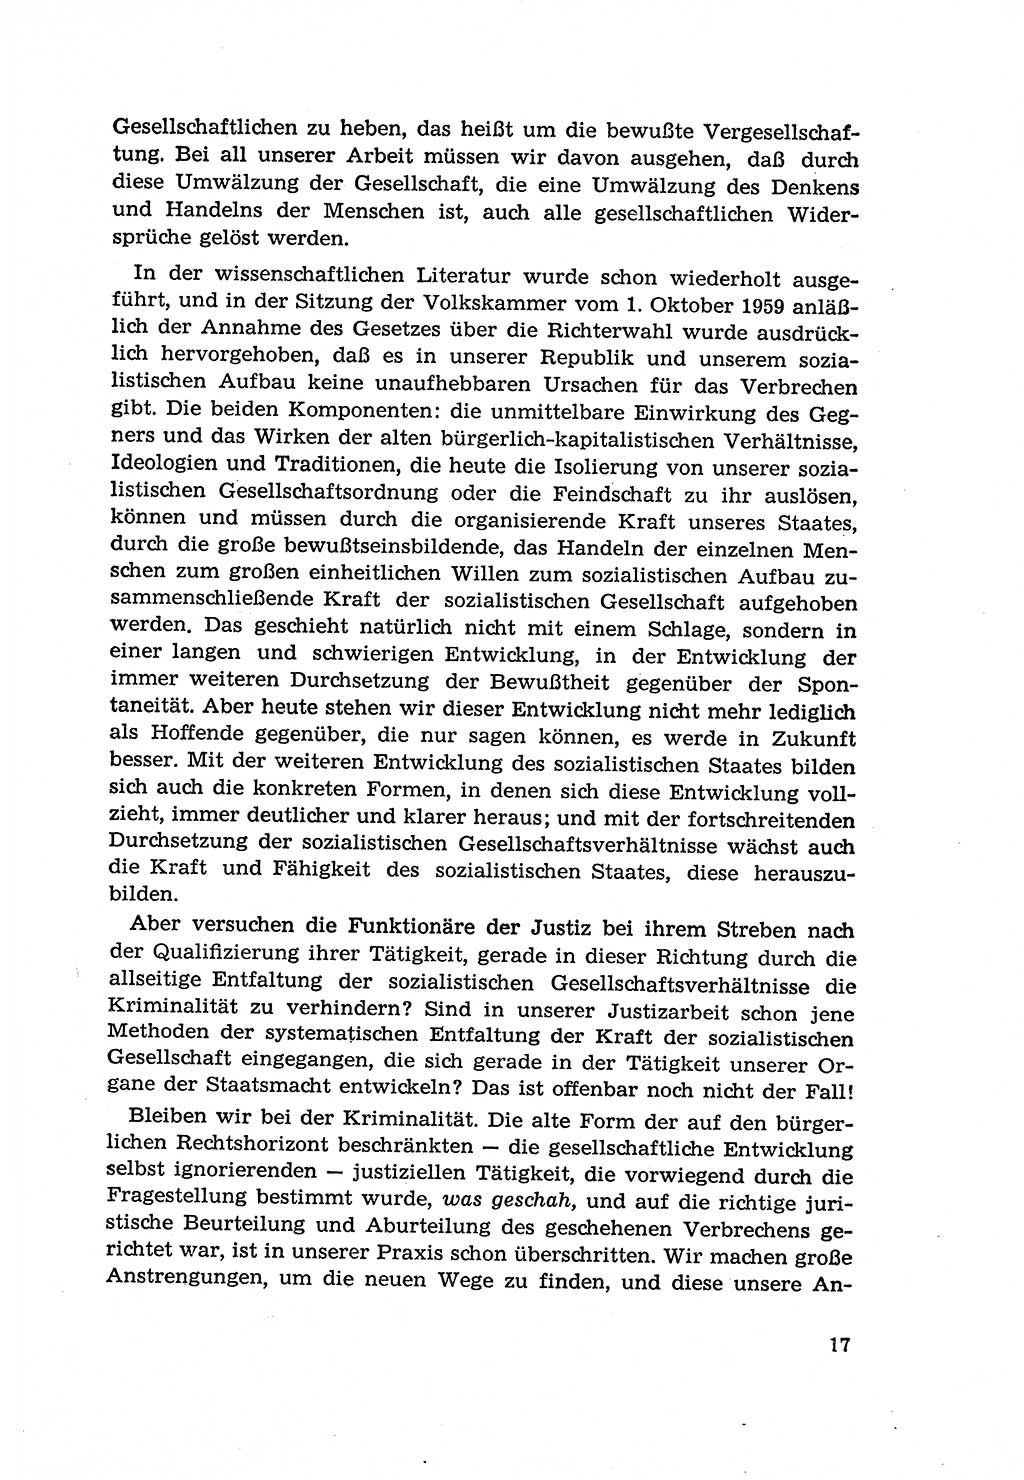 Zur Entwicklung des sozialistischen Strafrechts der Deutschen Demokratischen Republik (DDR) 1960, Seite 17 (Entw. soz. Strafr. DDR 1960, S. 17)